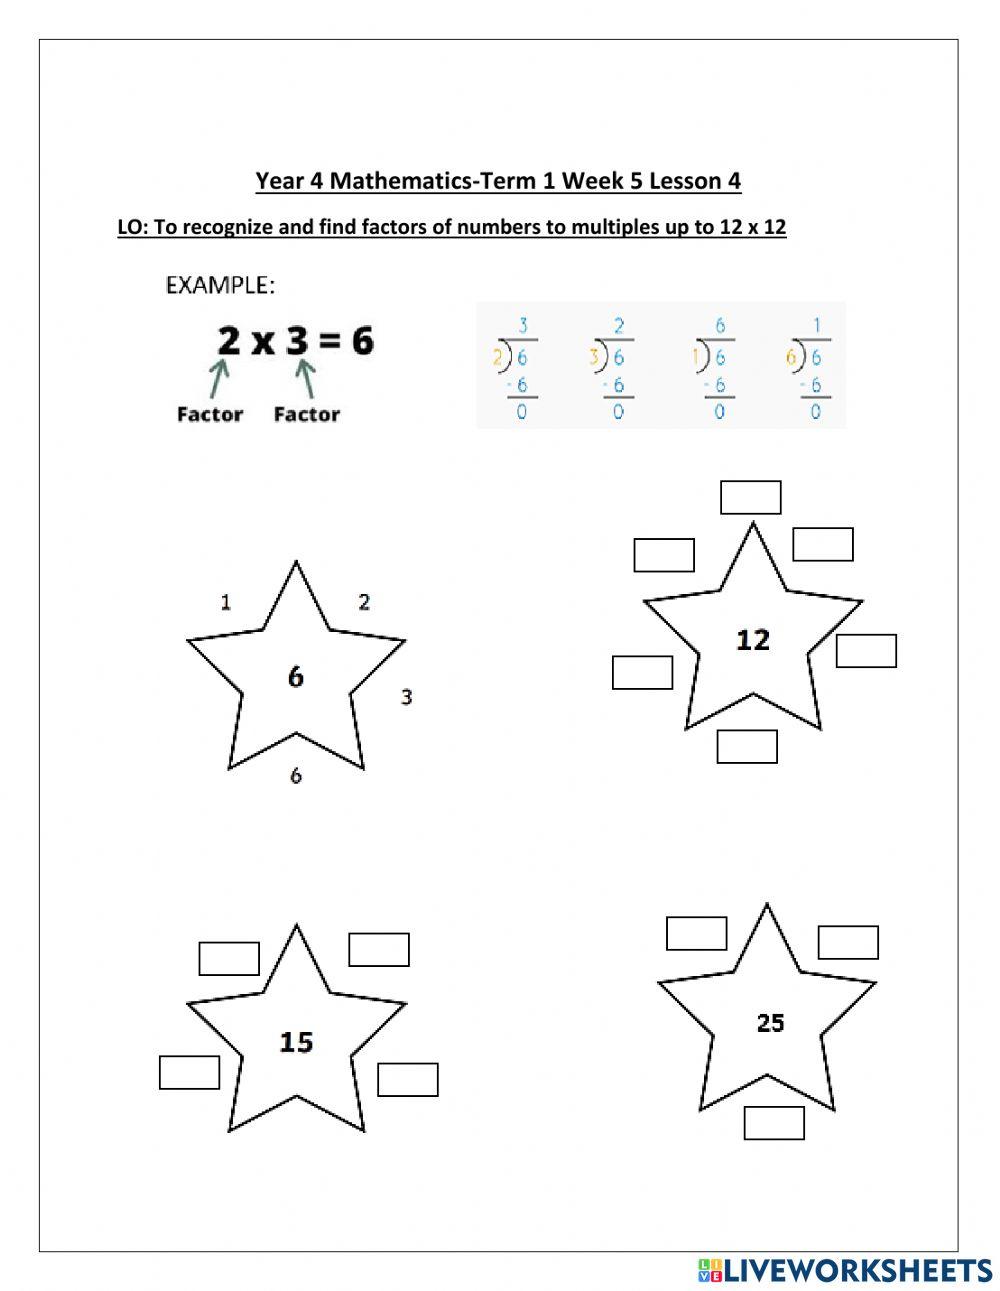 DIS Maths term 1 week 5 lesson 4